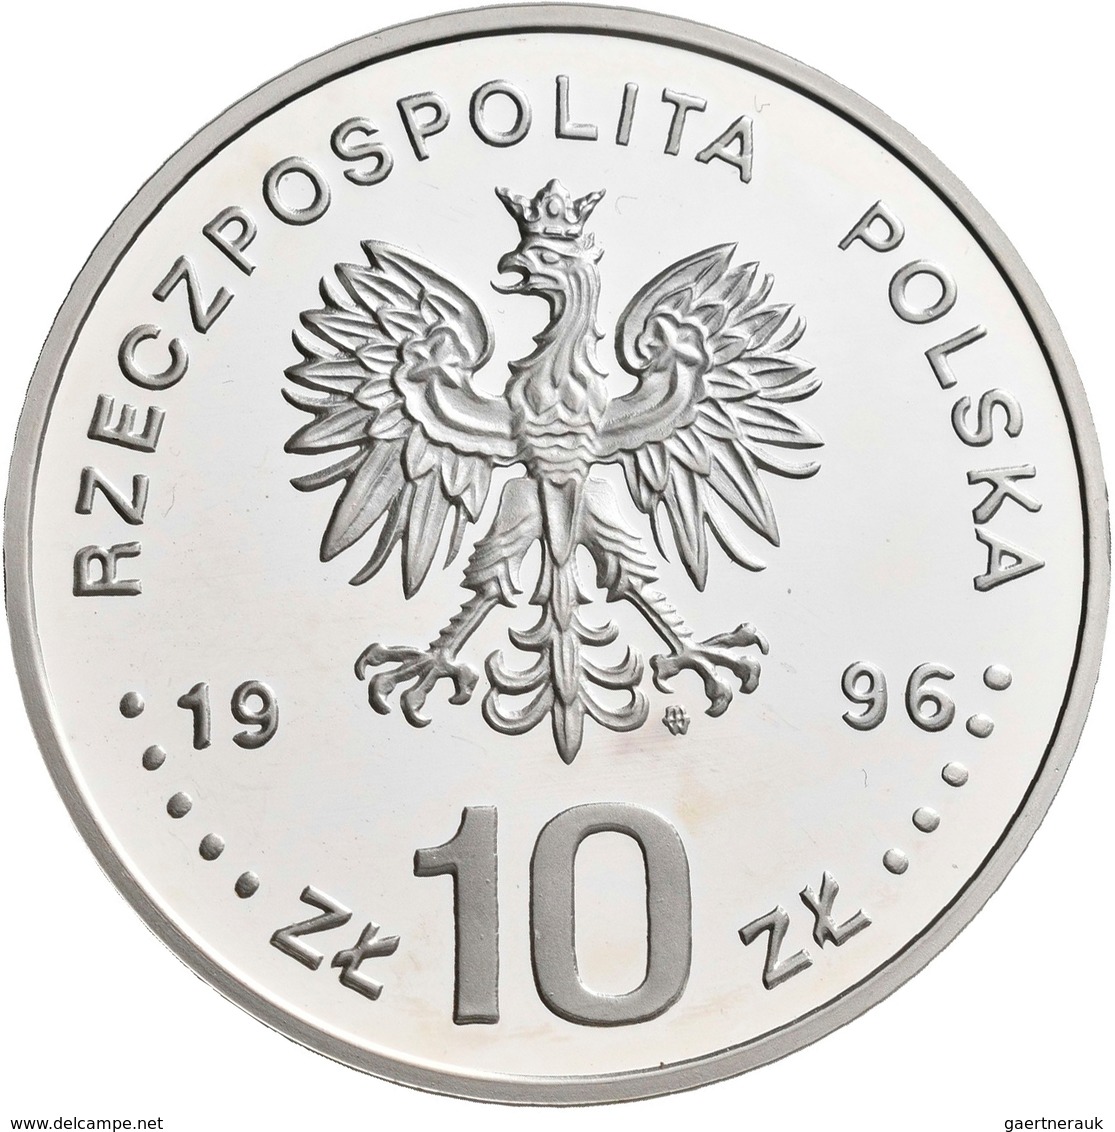 Polen: 10 Zlotych 1996, Zygmunt II. August, KM# Y 307, Fischer K (10) 004. Polierte Platte. - Poland